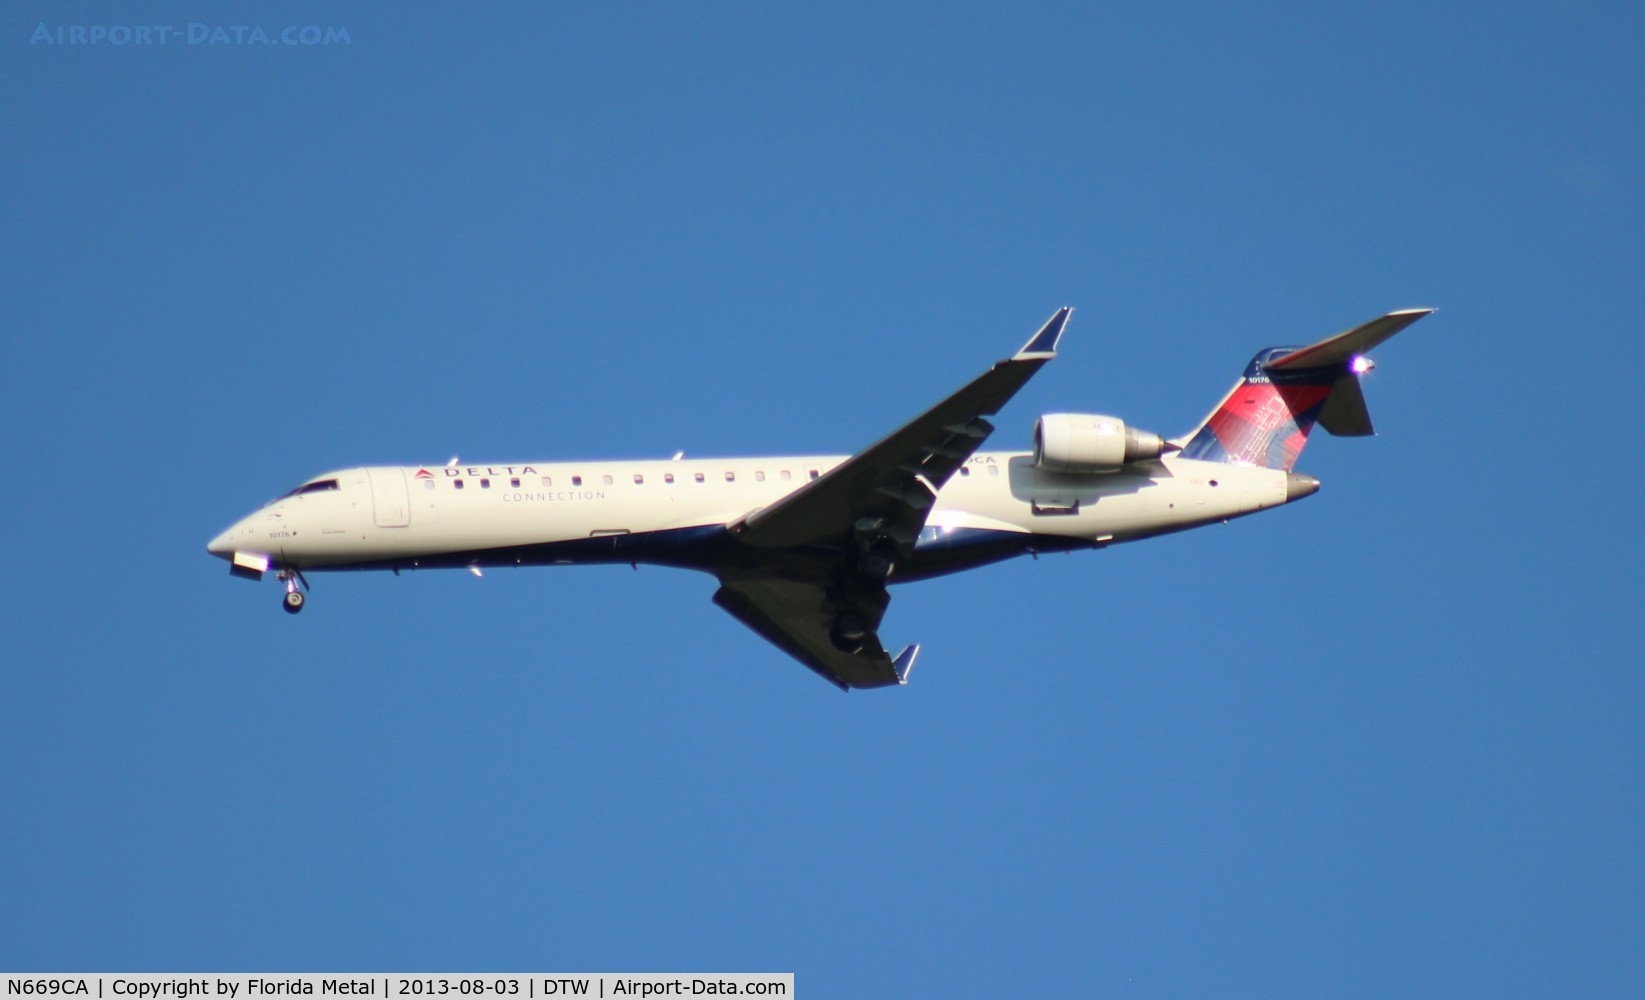 N669CA, 2004 Bombardier CRJ-700 (CL-600-2C10) Regional Jet C/N 10176, Comair CRJ-700